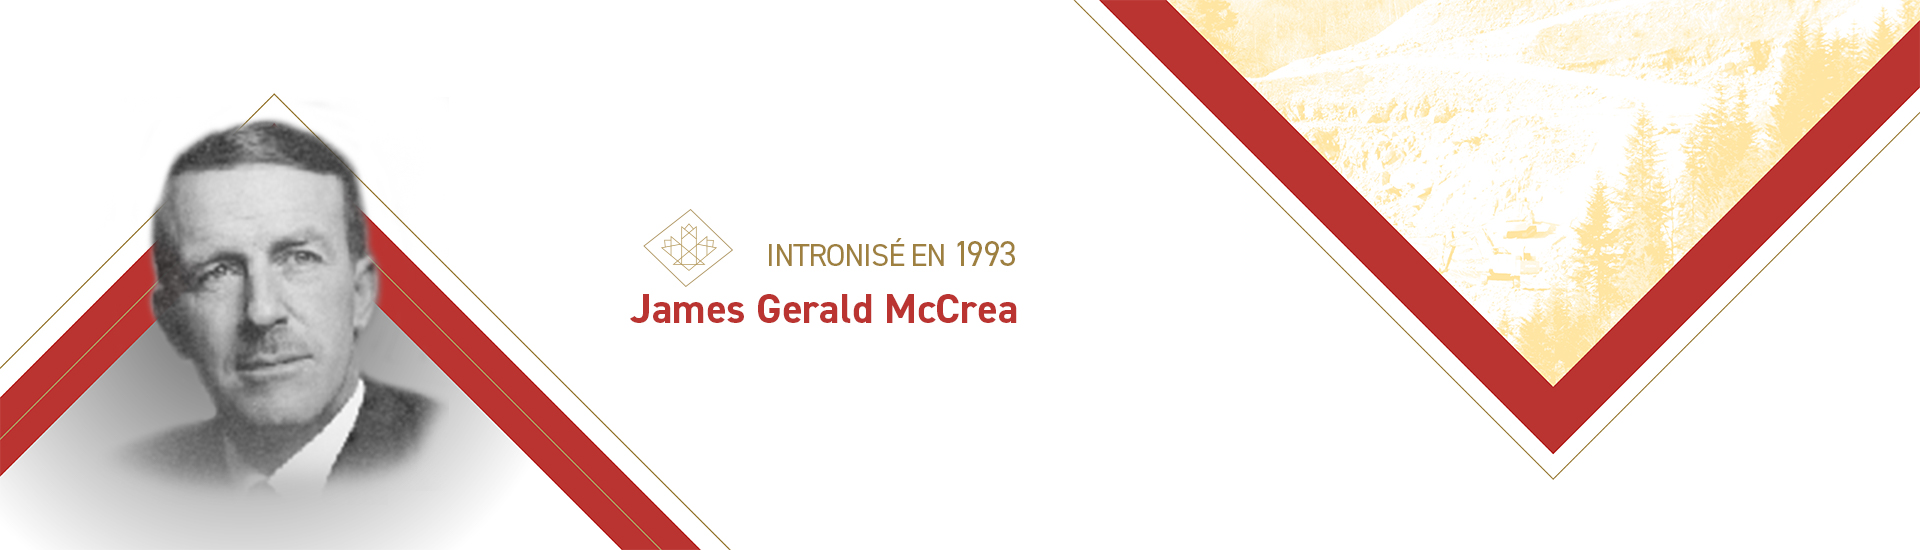 James Gerald McCrea (1898 – 1953)